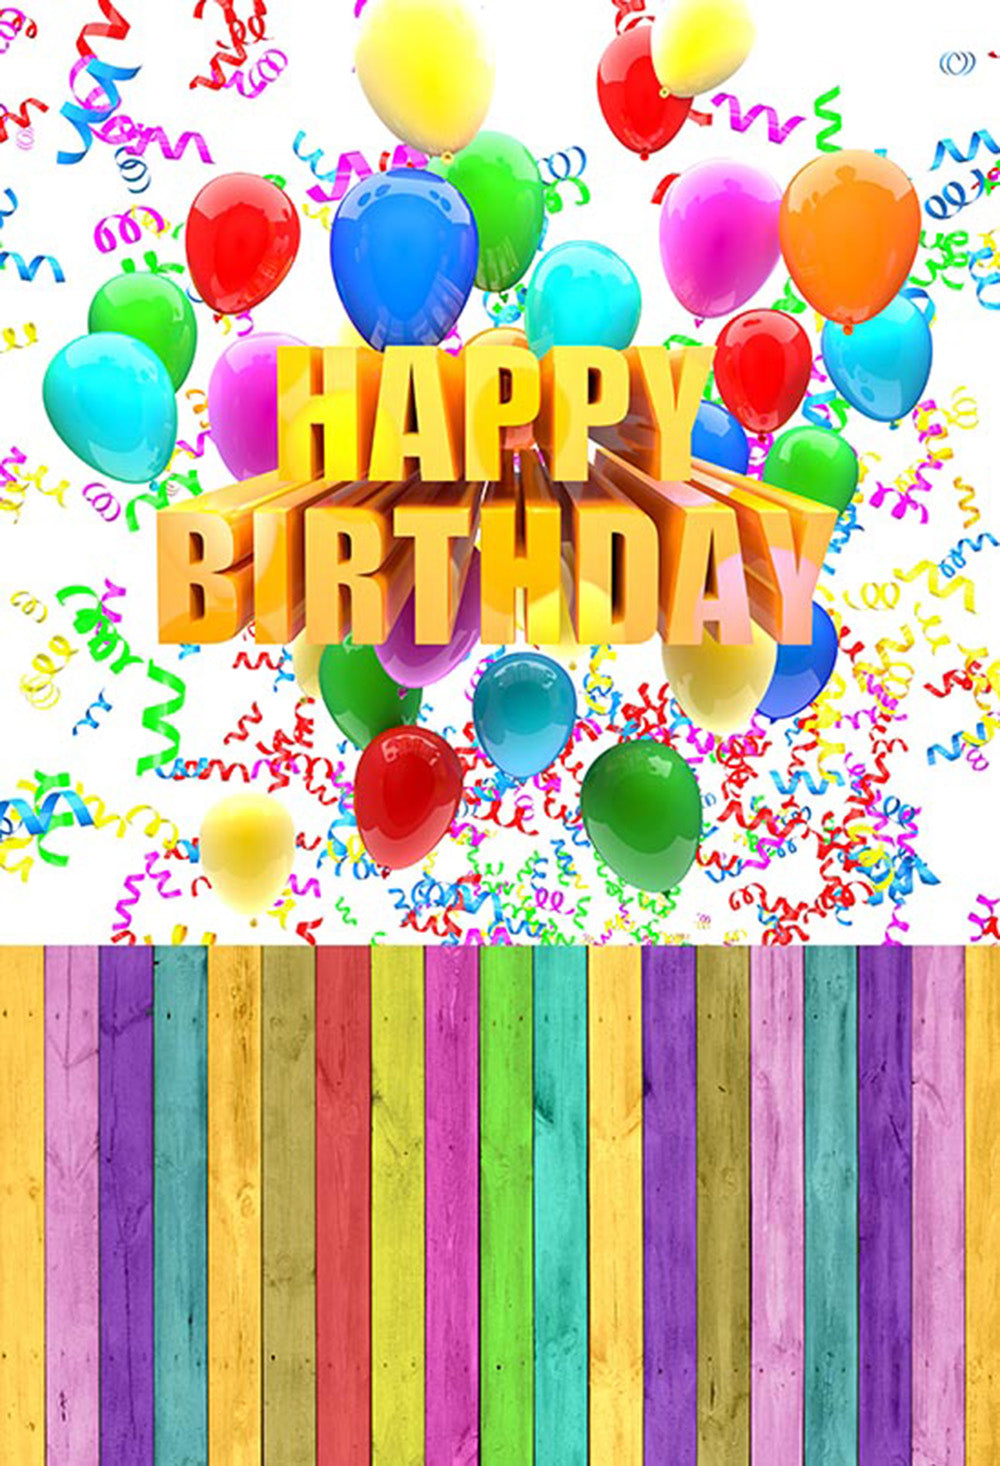 Cartel de feliz cumpleaños personalizado con nombre y edad para decoración  de fiesta de cumpleaños, pancarta de cumpleaños de 21, 3 x 3 pies